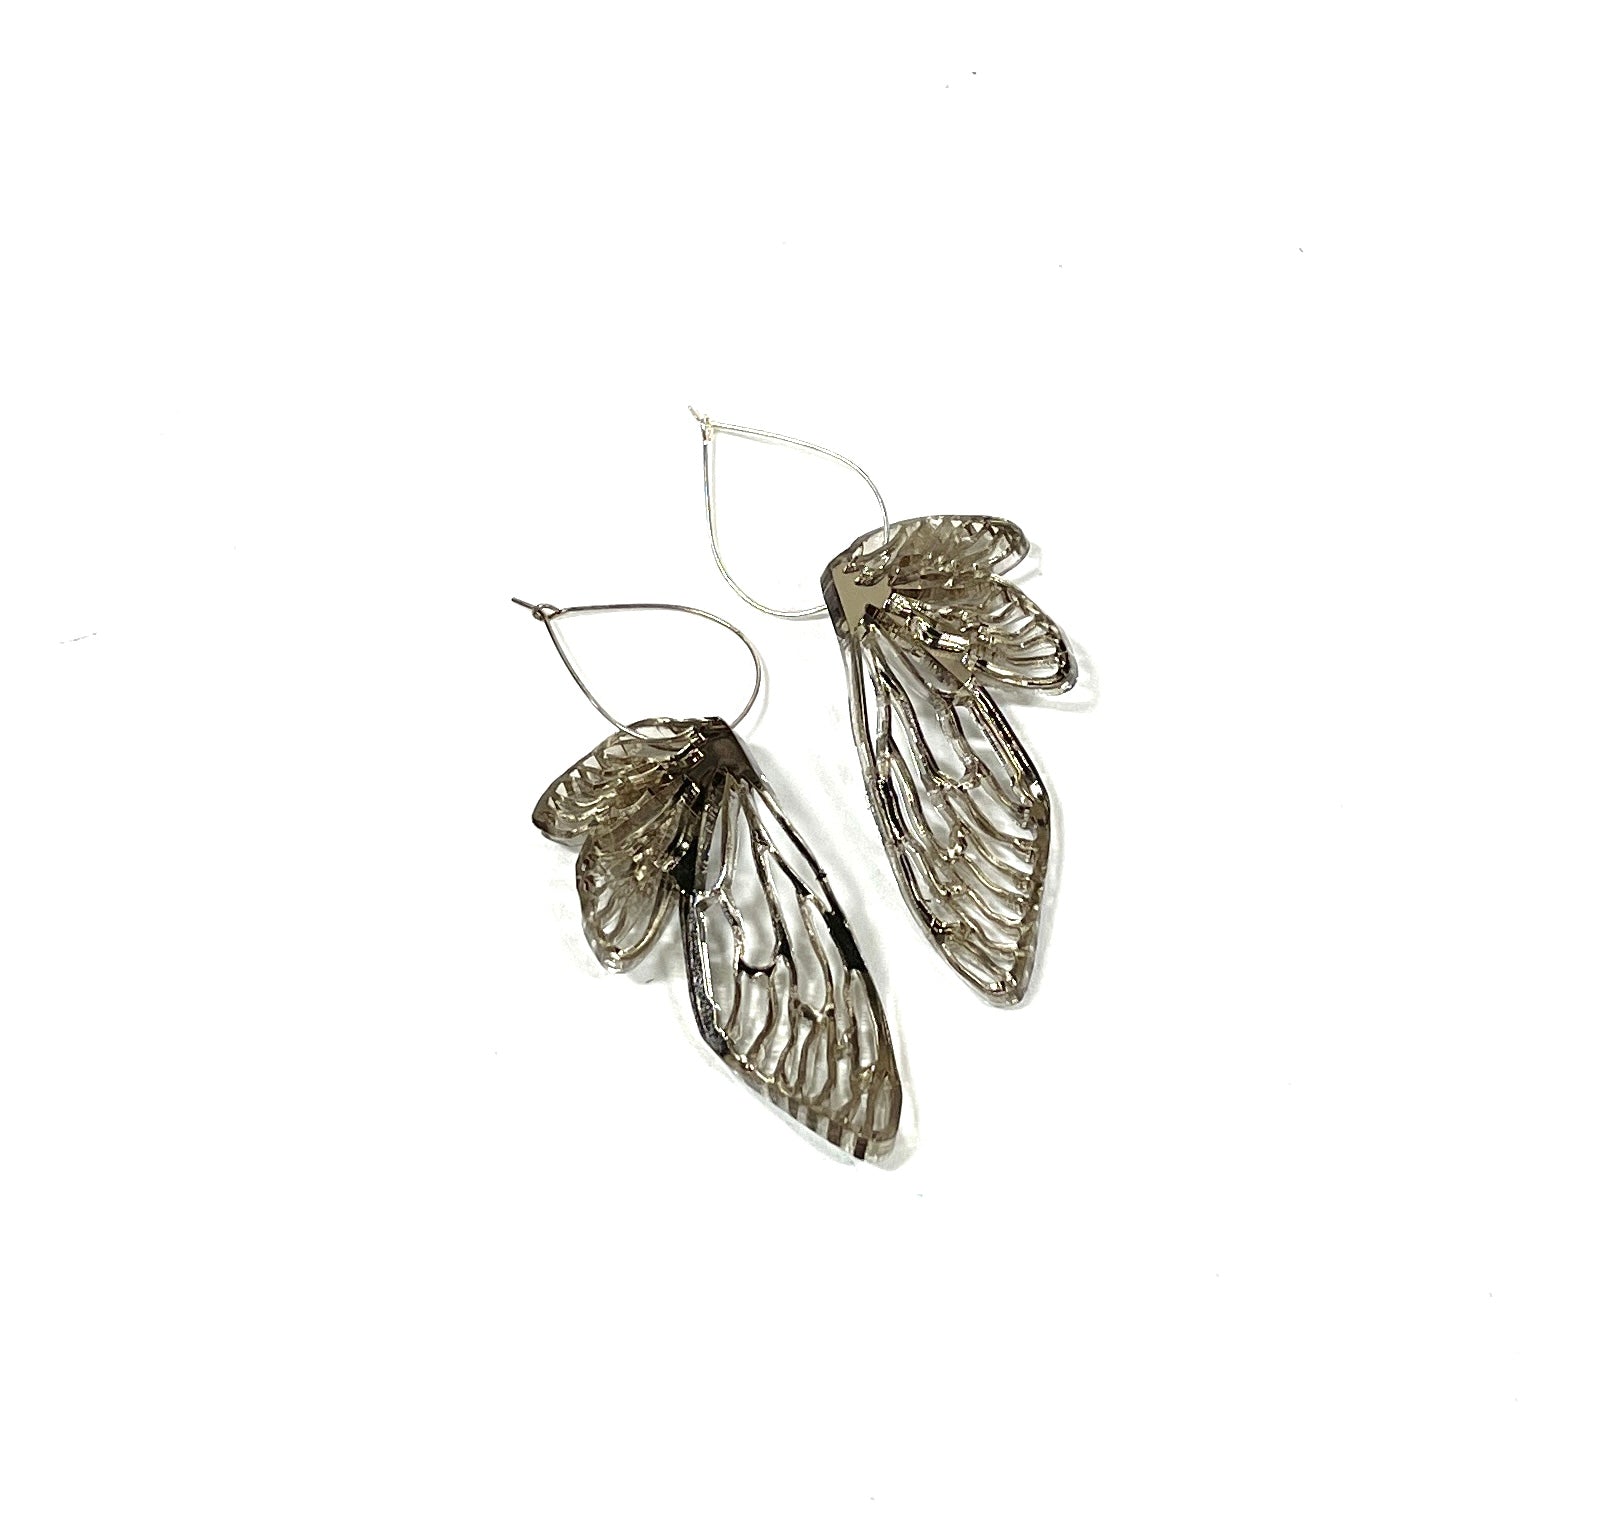 acrylic jewelry - wing earrings - bronze mirror